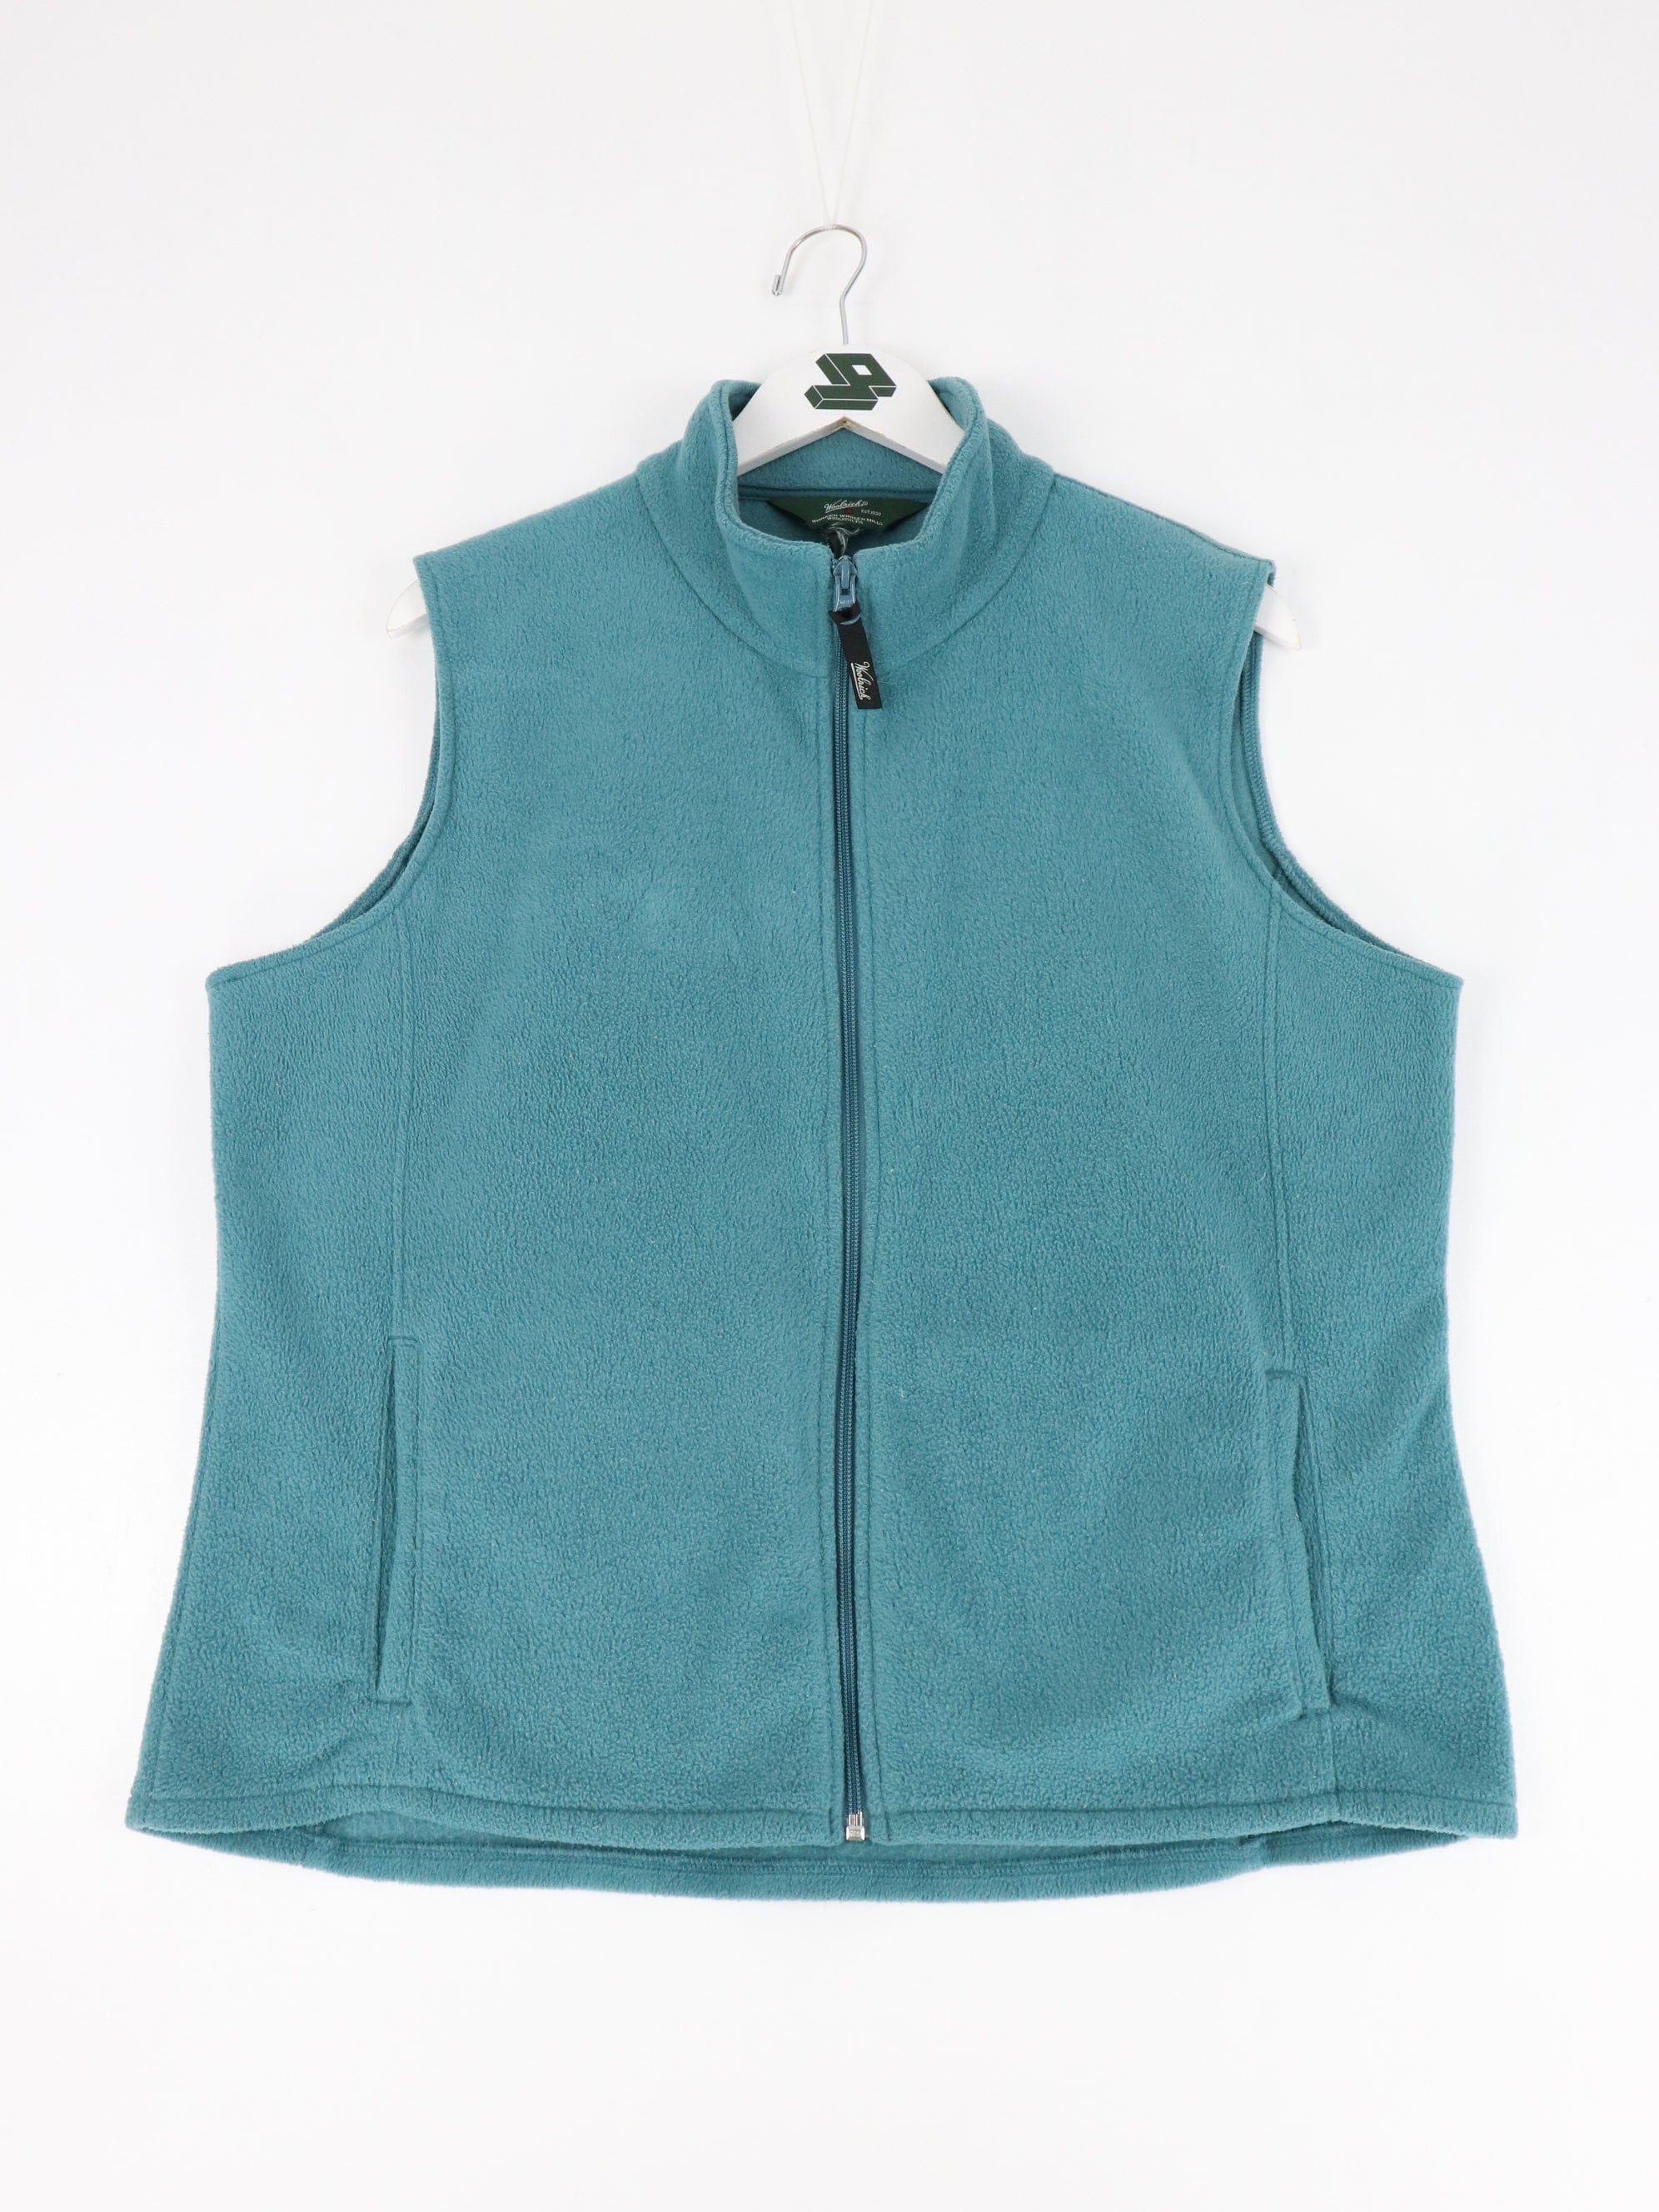 Woolrich Vest Womens XL Blue Fleece Sweater Outdoors